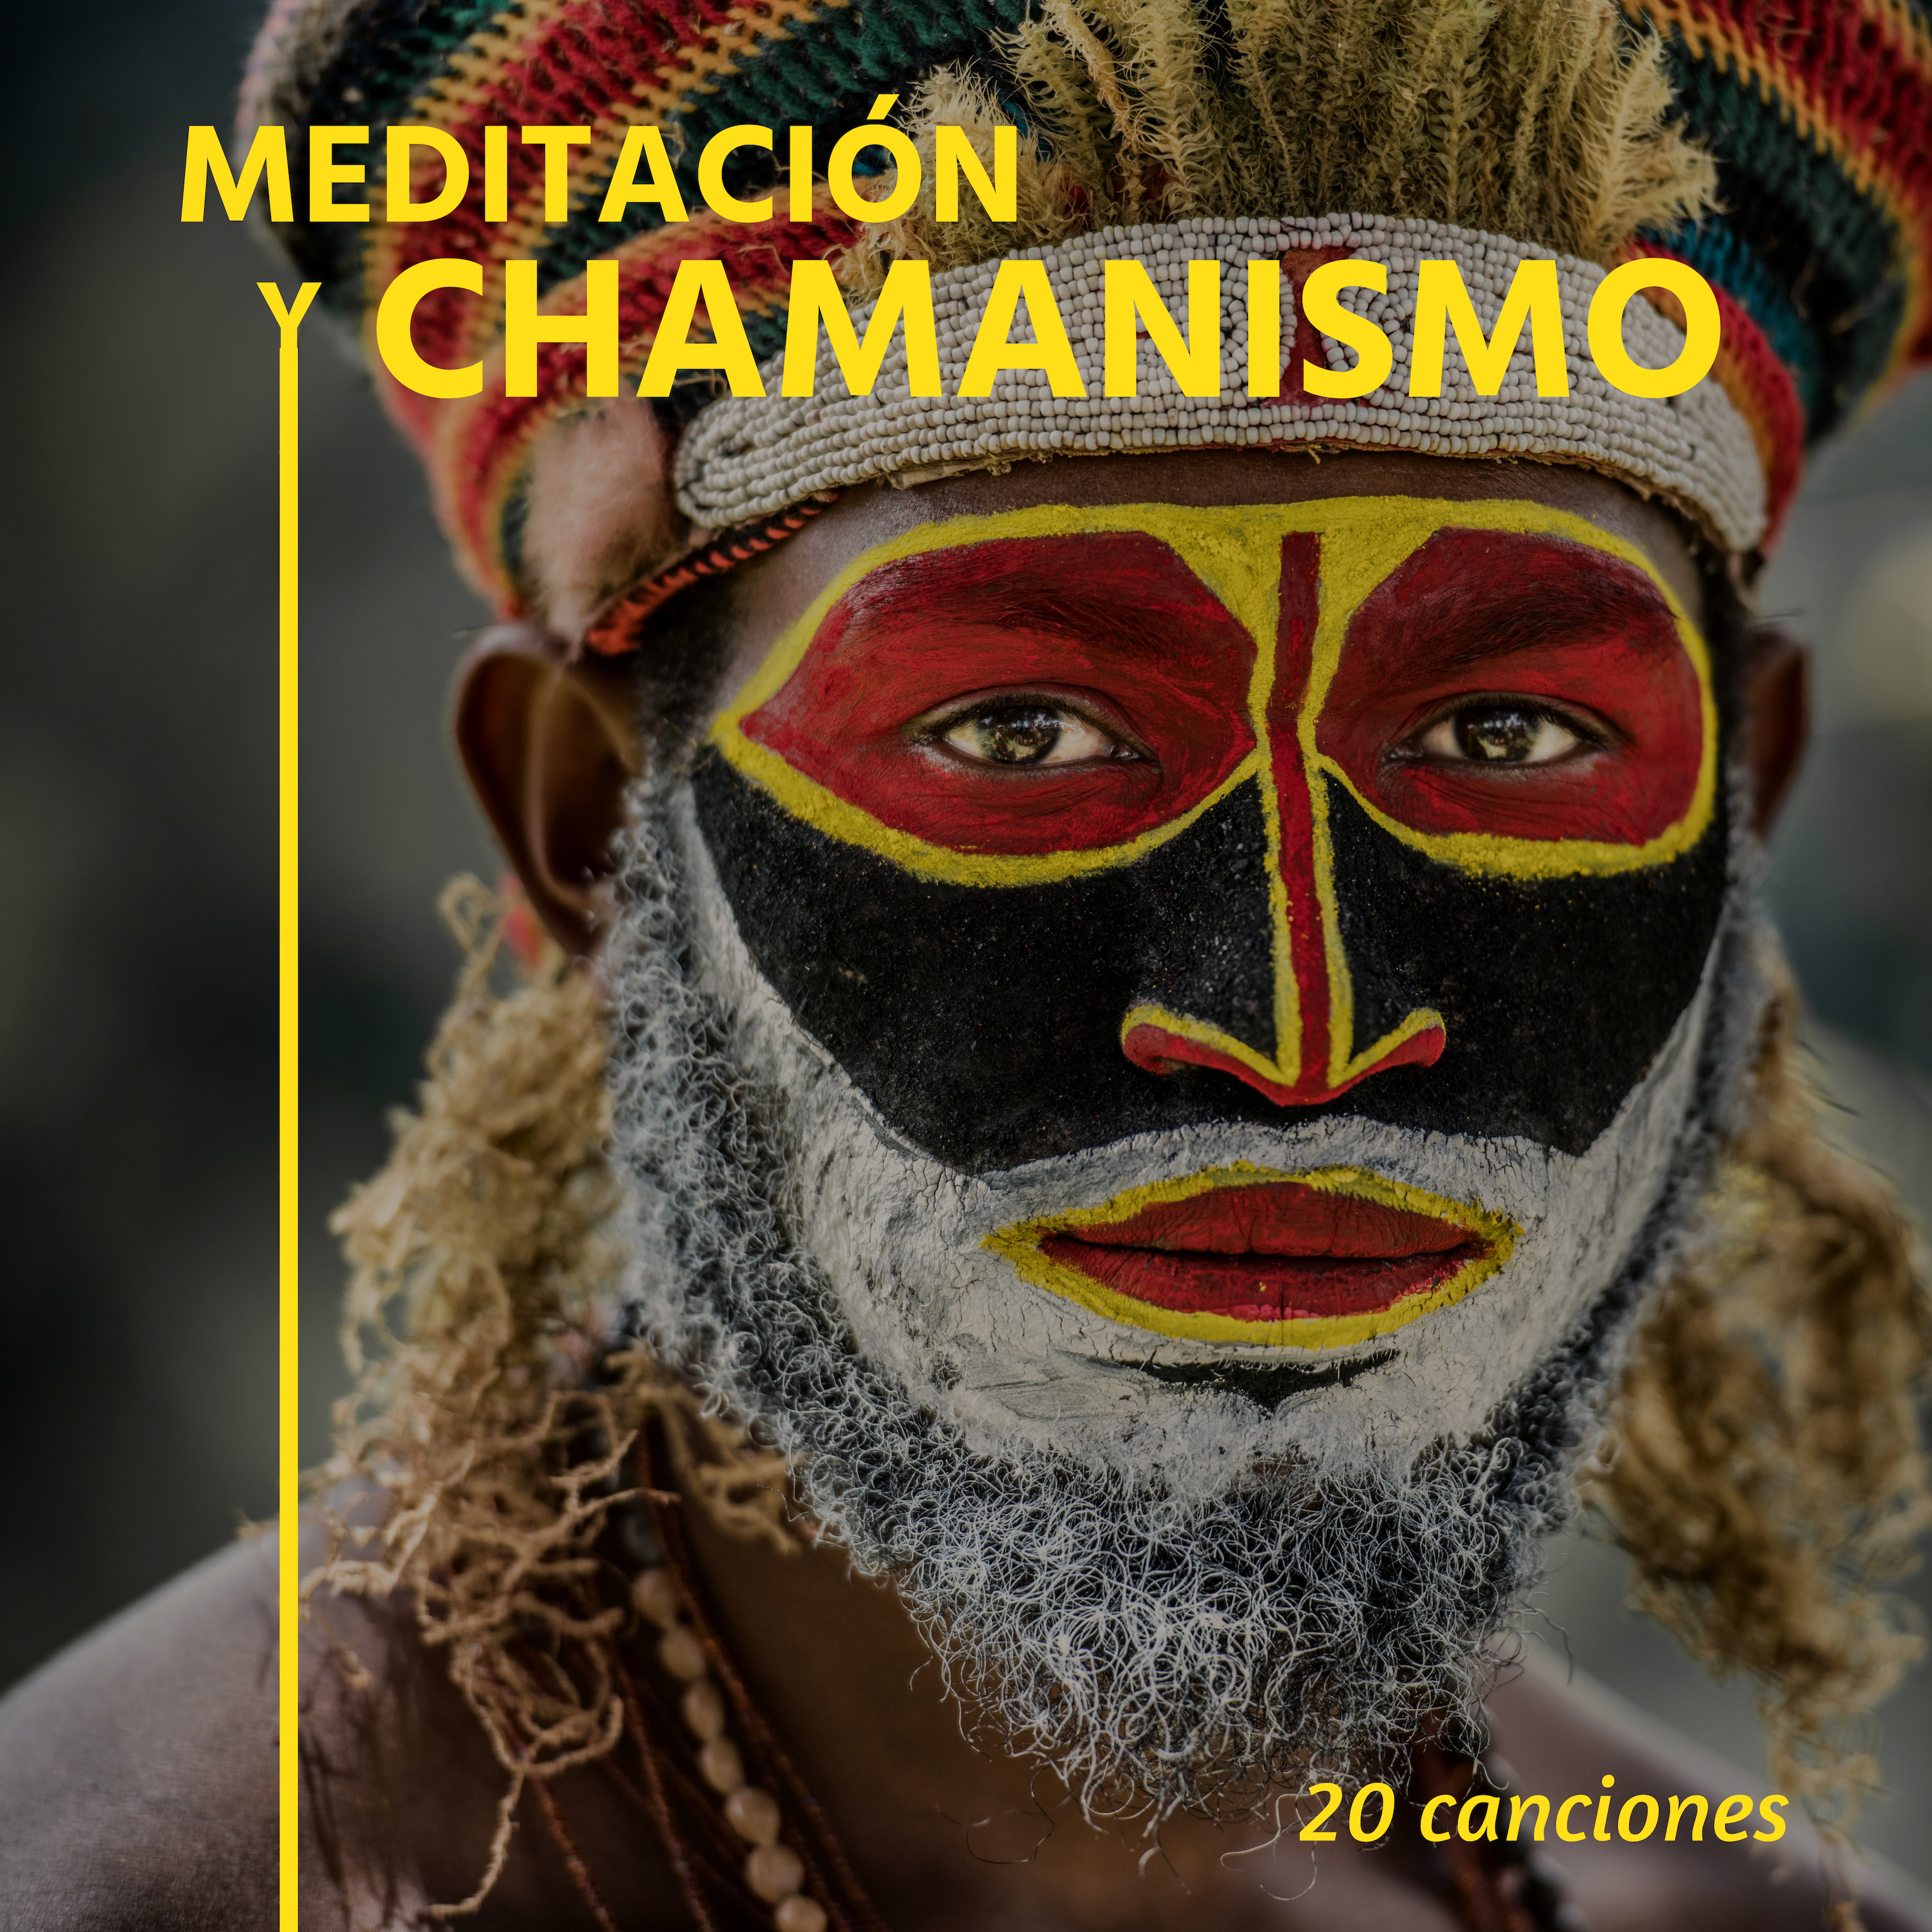 Meditacio n y Chamanismo: 20 Canciones  Mejor Mu sica de Meditacio n Chama nica Trance y Relajacio n Profunda